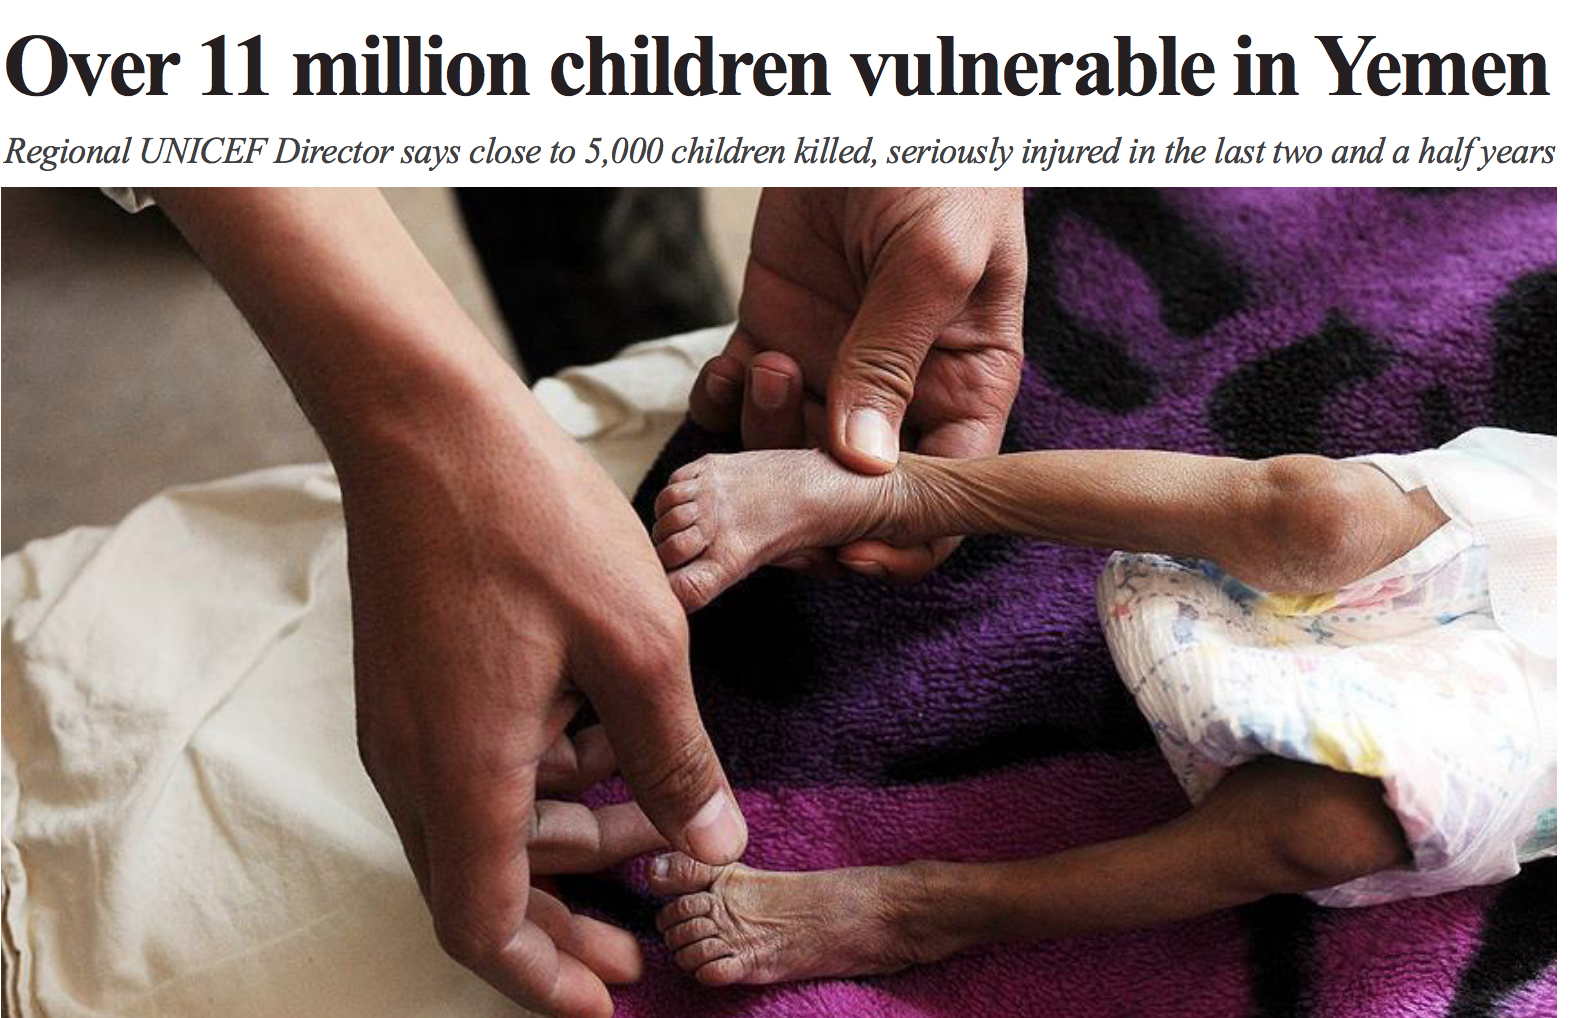 Over 11 million children vulnerable in Yemen: UNICEF